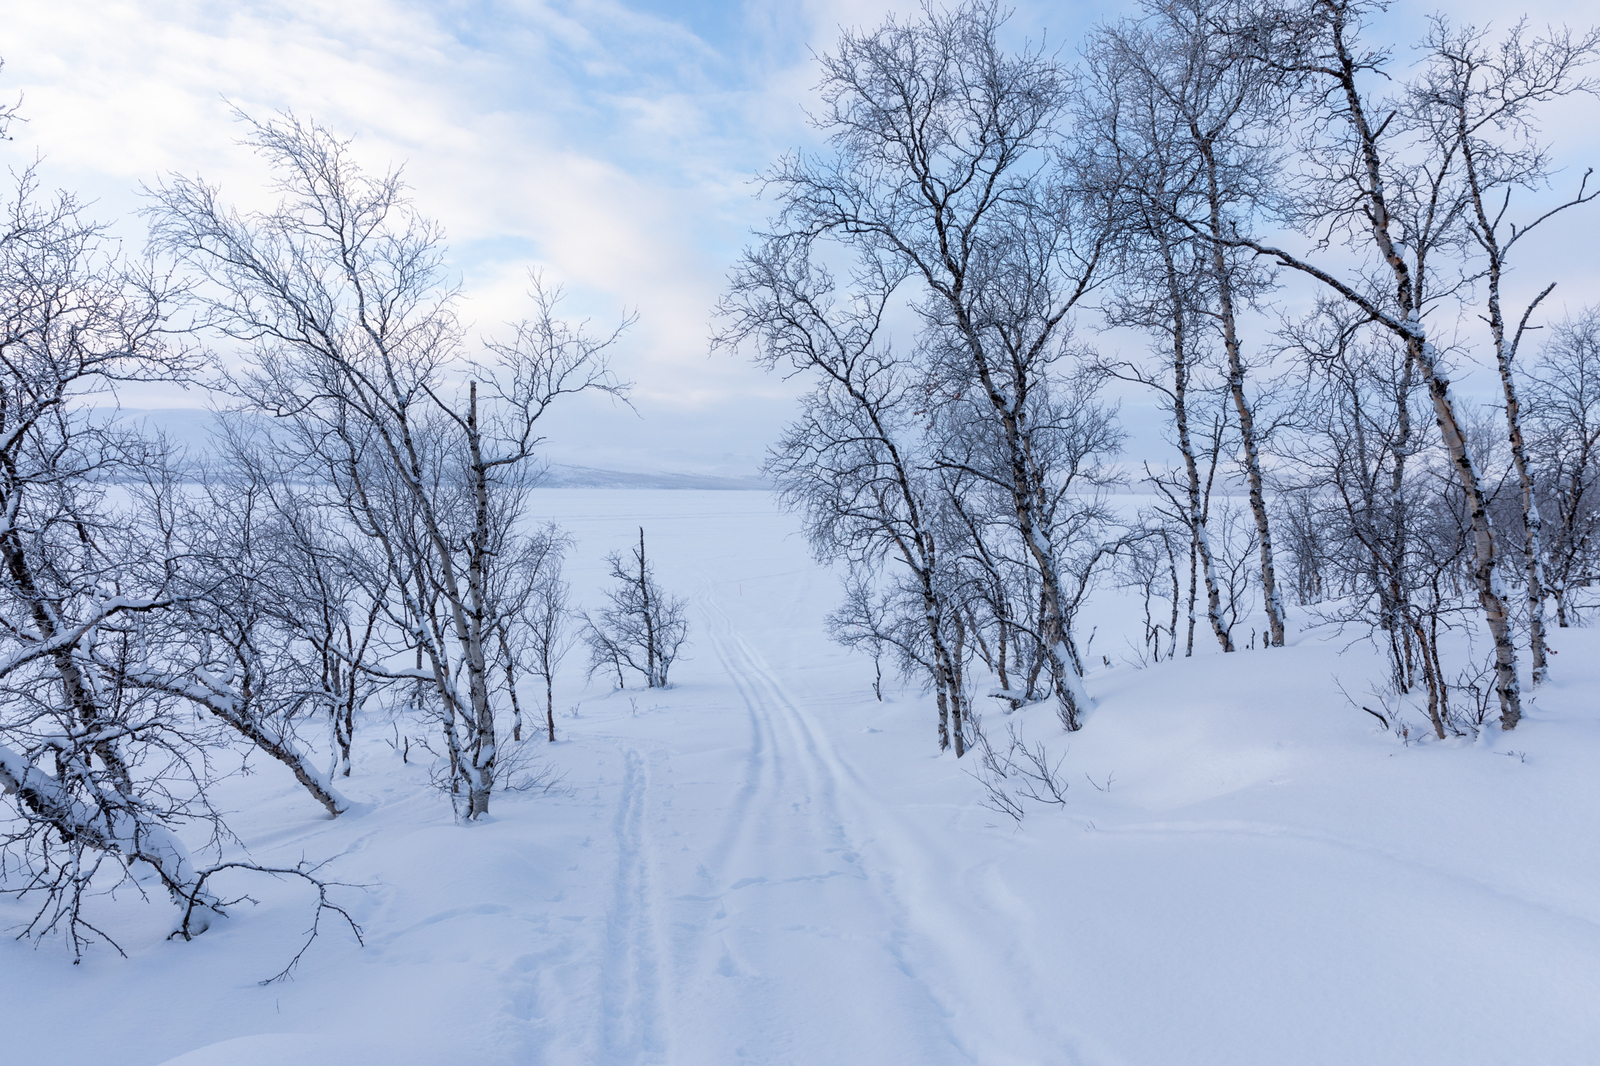 Talvinen Kilpisjärve ranta, jossa kasvaa koivuja. Keskellä kuvaa näkyy moottorikelkan jäljet.